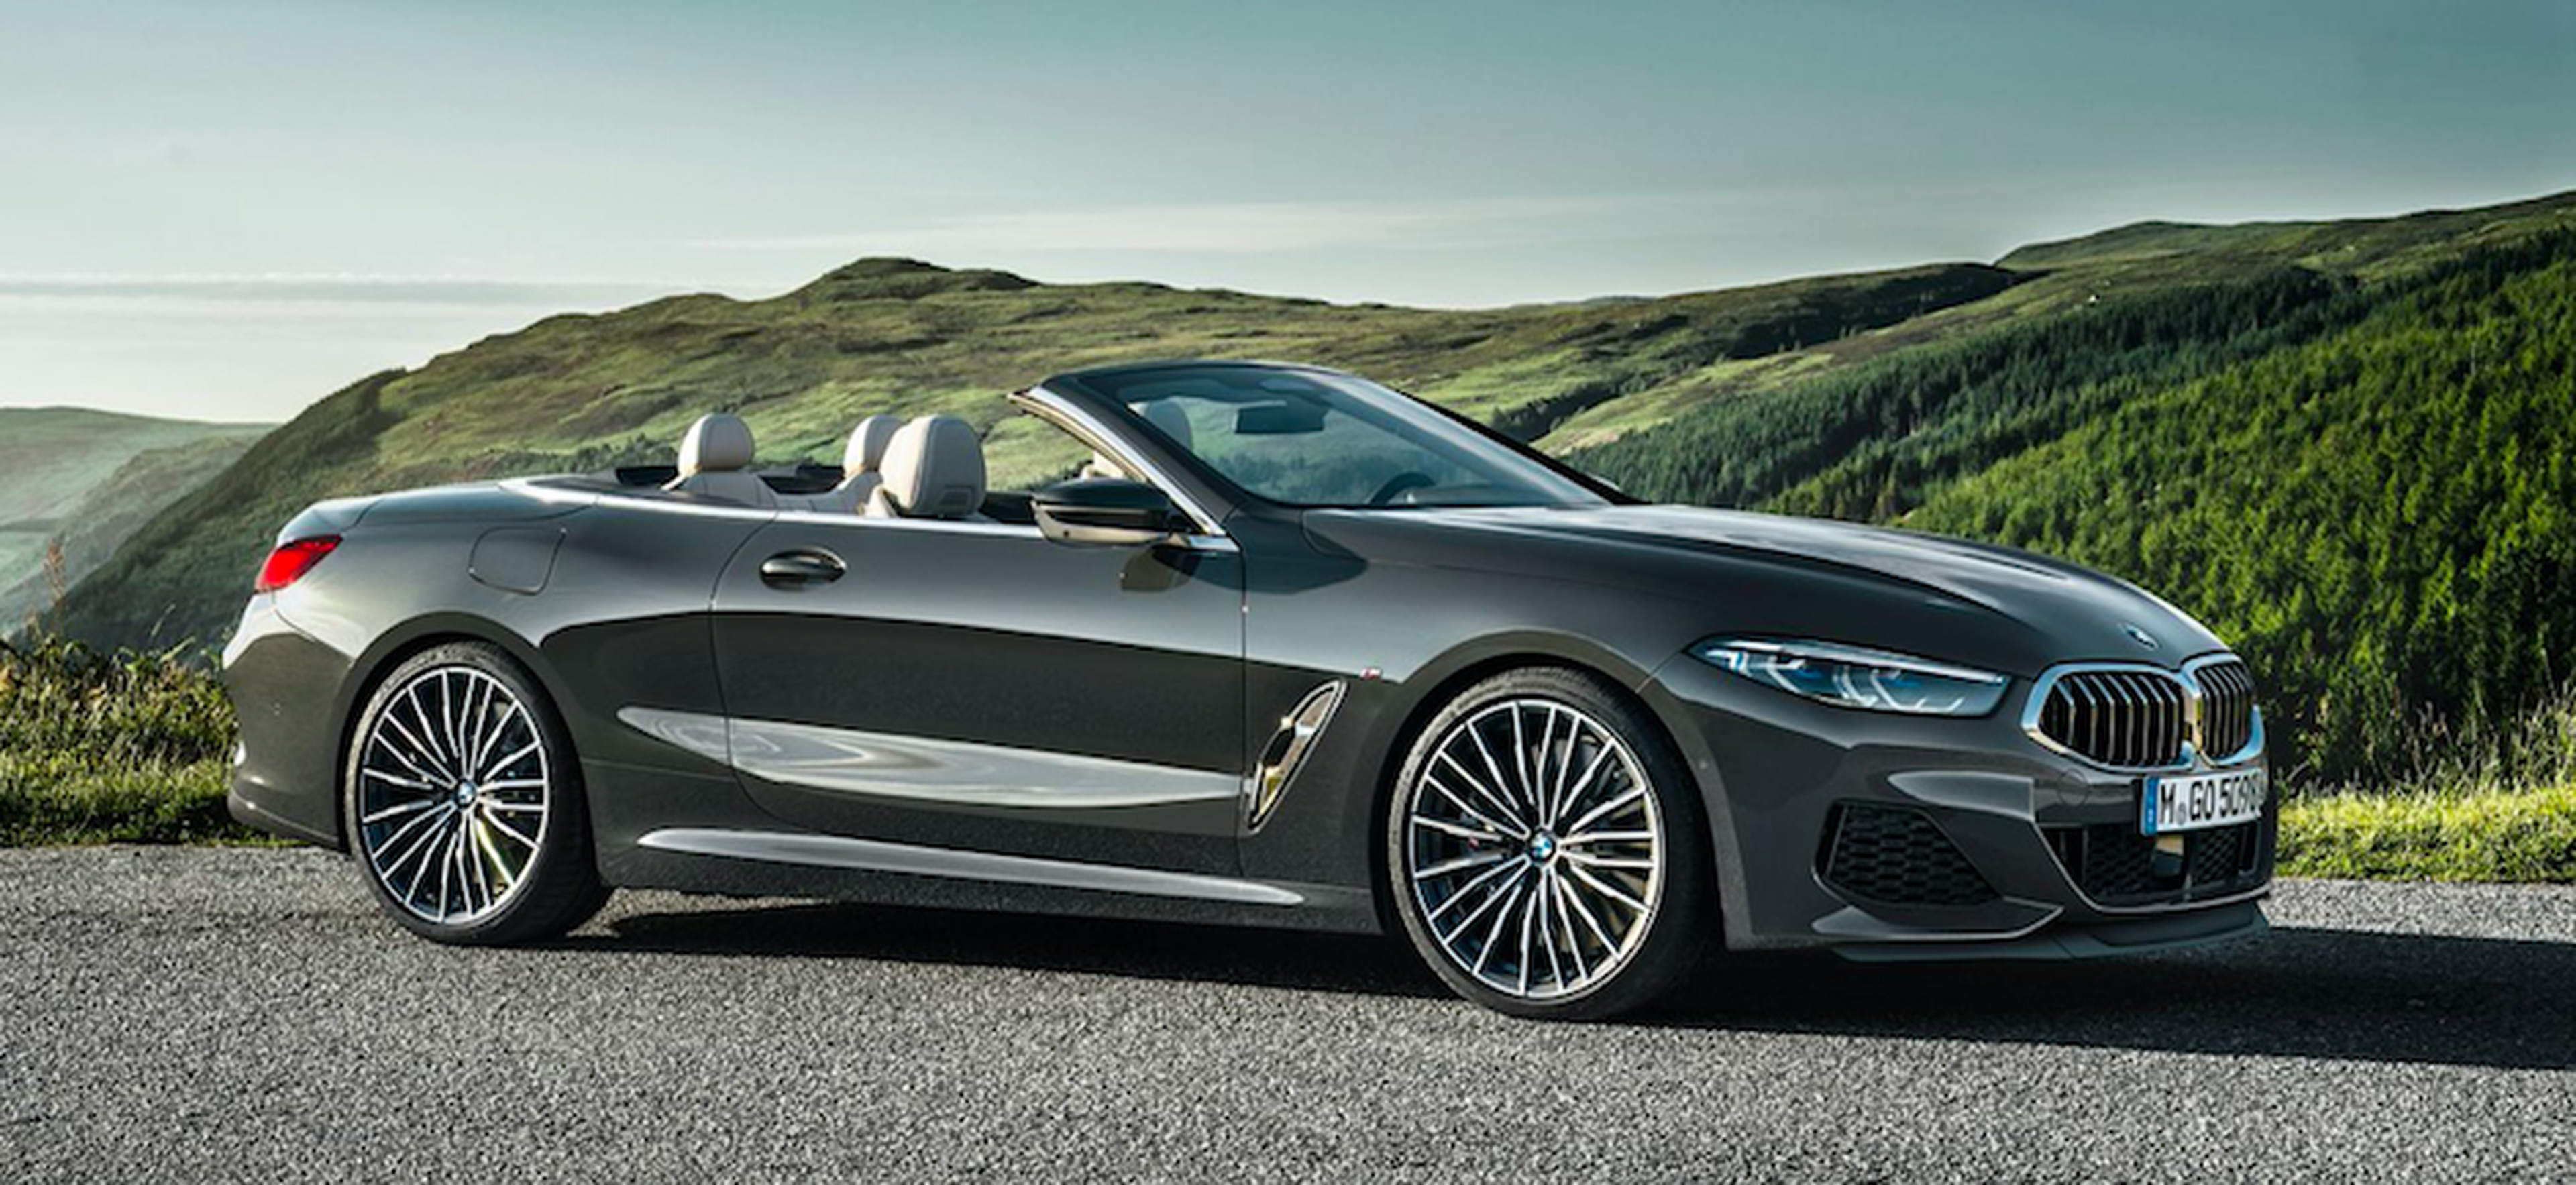 VIDEO: BMW Serie 8 Convertible, todos los detalles del lujoso descapotable